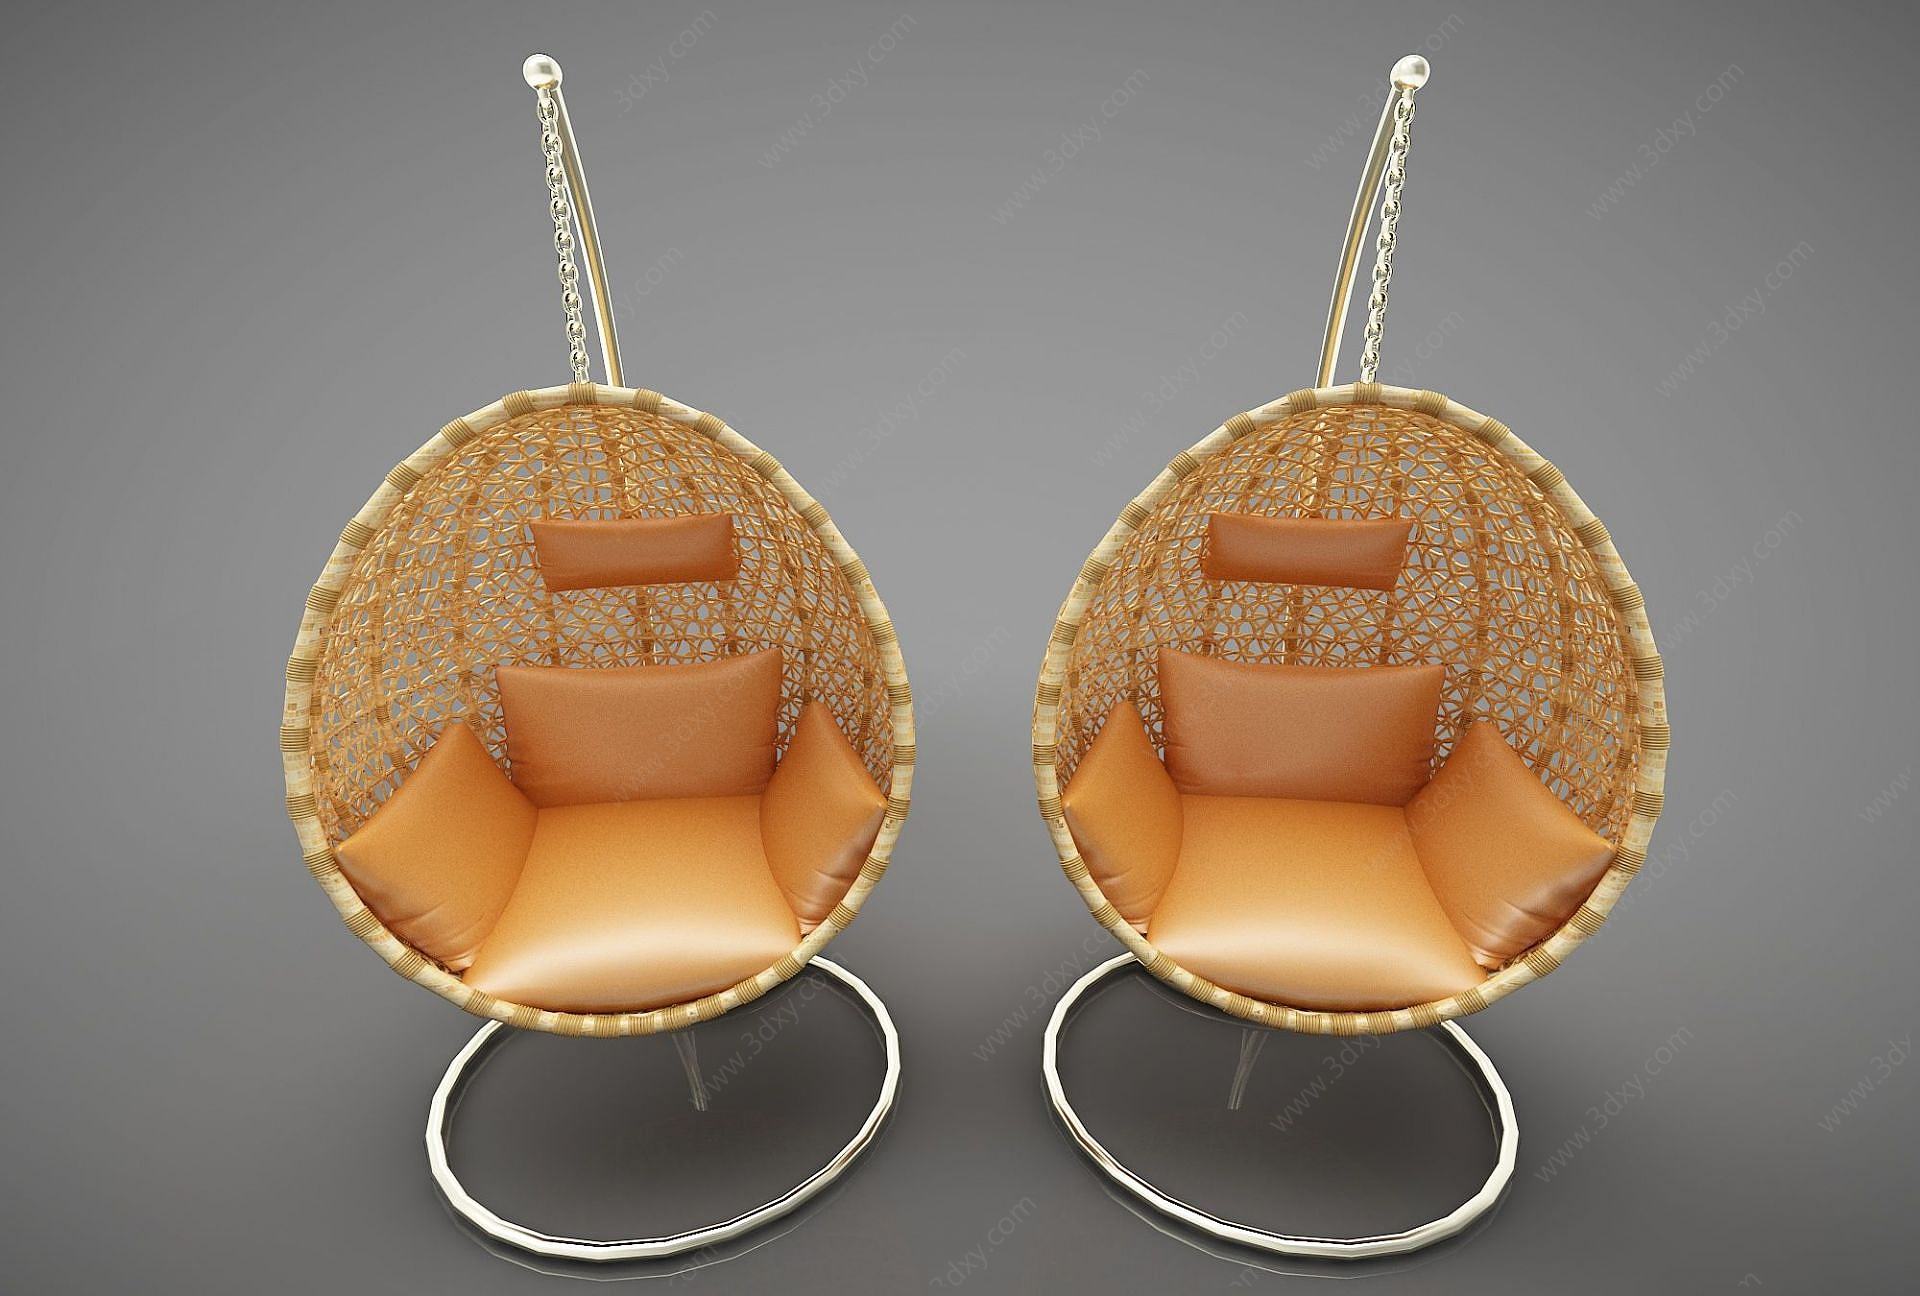 现代木质休闲椅3D模型